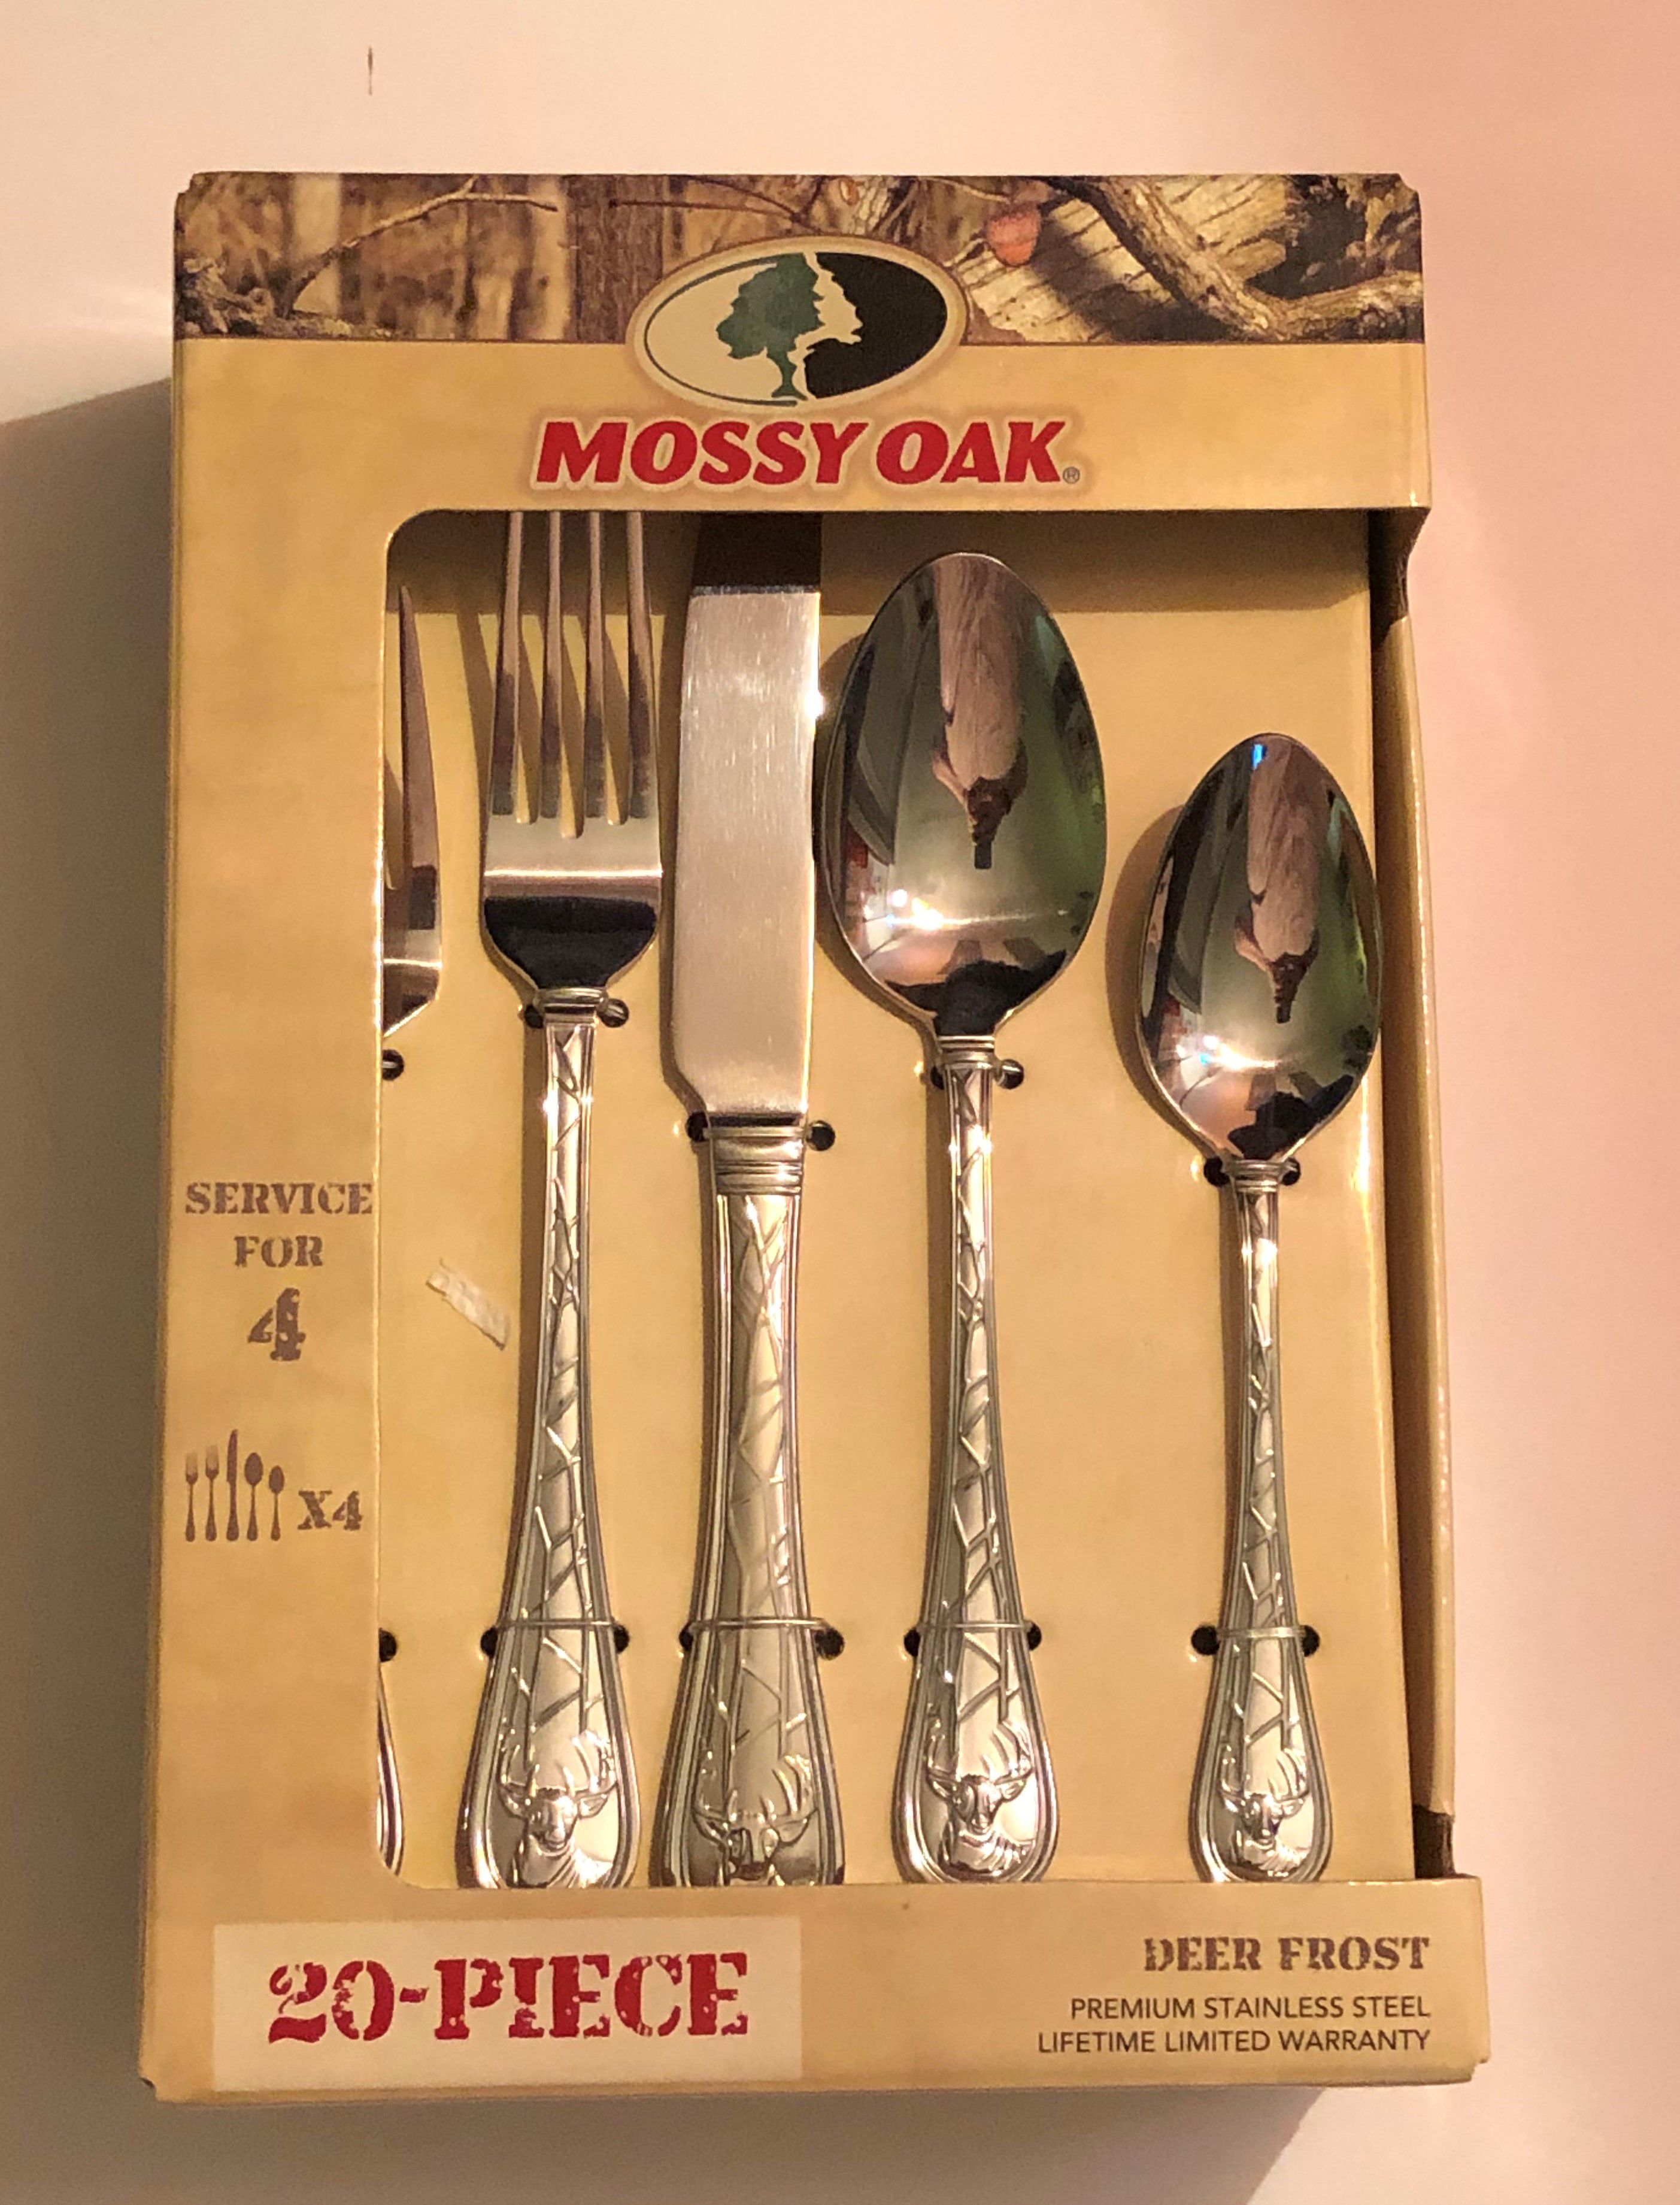 NEW Mossy Oak Deer Frost 20 piece silverware / flatware set